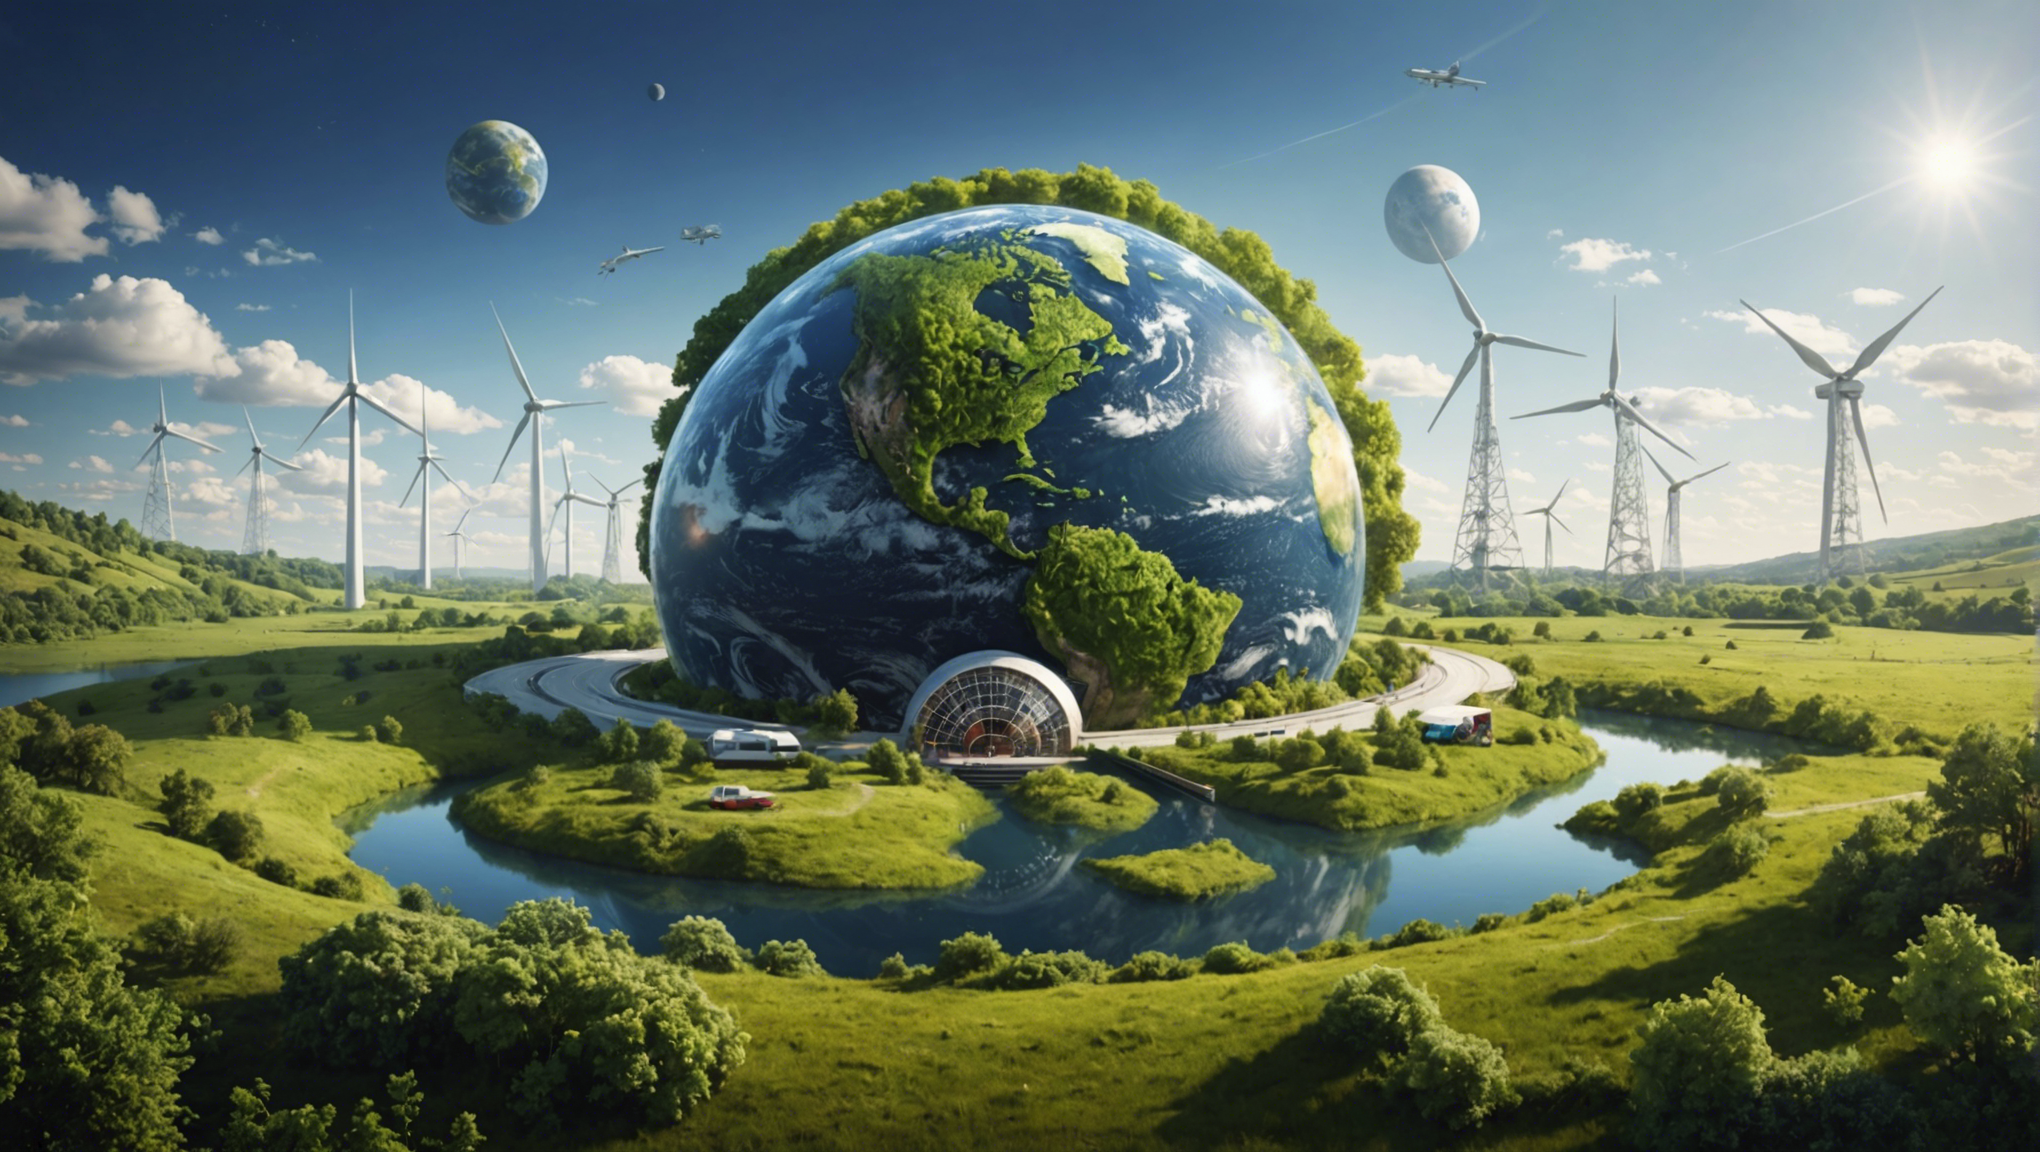 découvrez une solution écologique innovante pour préserver notre planète et agir positivement sur l'environnement.